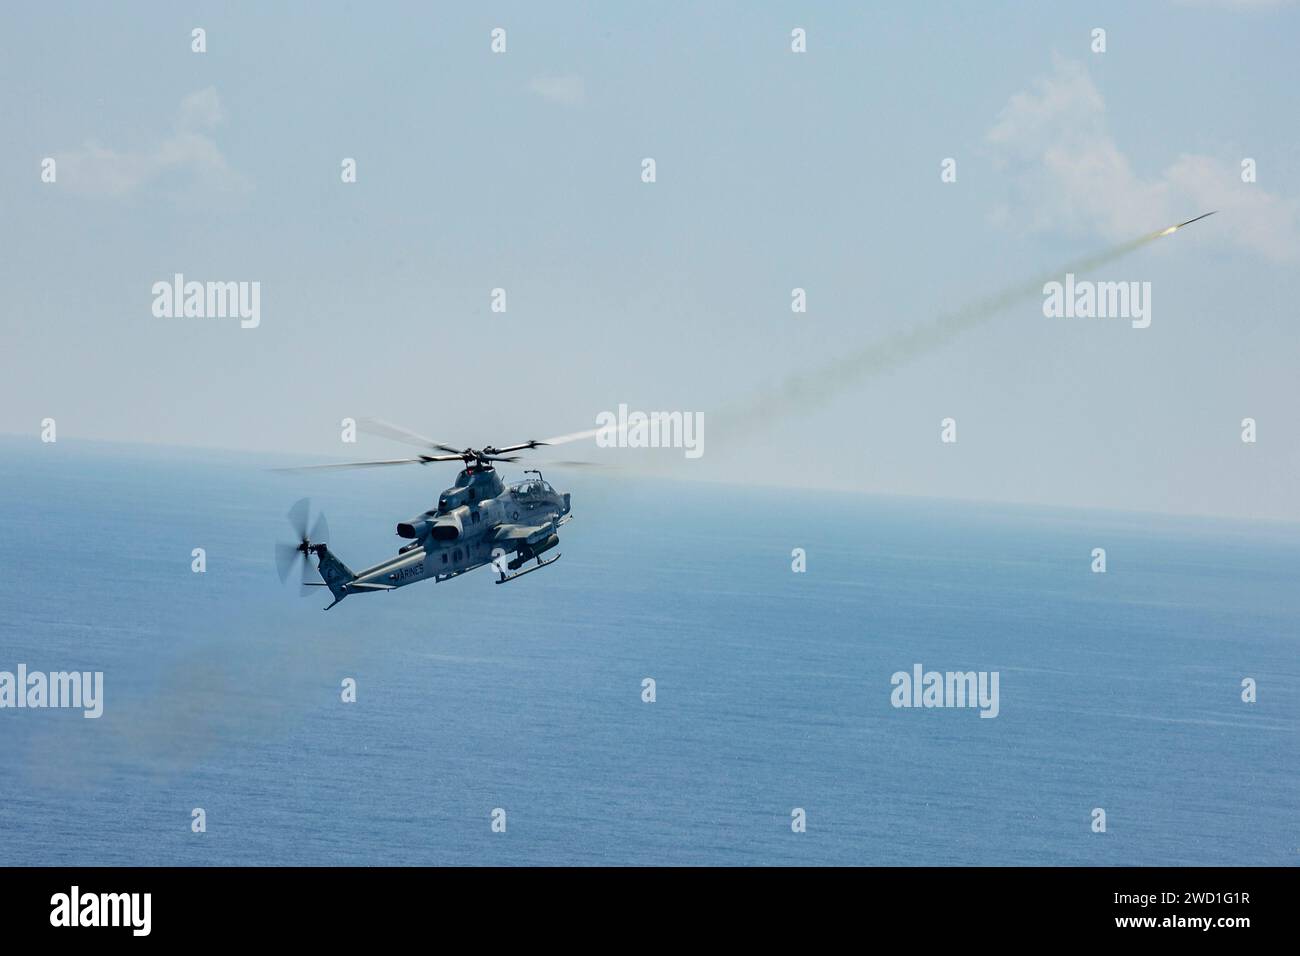 Un hélicoptère Viper AH-1Z du corps des Marines des États-Unis tire une fusée éclairante d'entraînement au cours d'un événement d'entraînement au tir réel. Banque D'Images